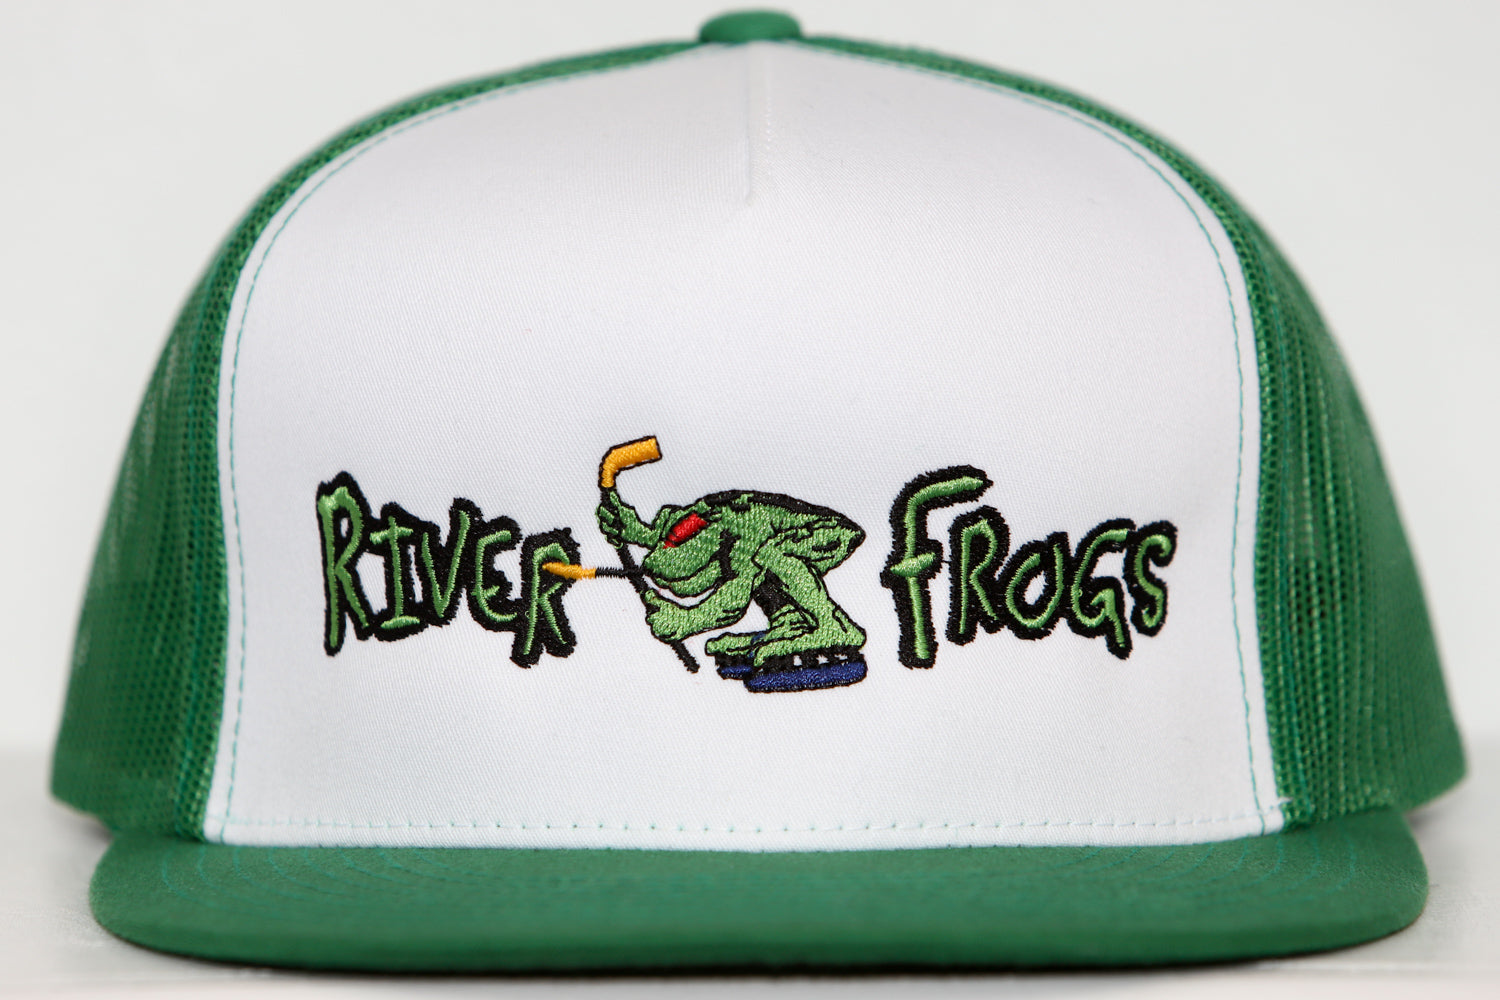 Louisville RiverFrogs Hat (Trucker)